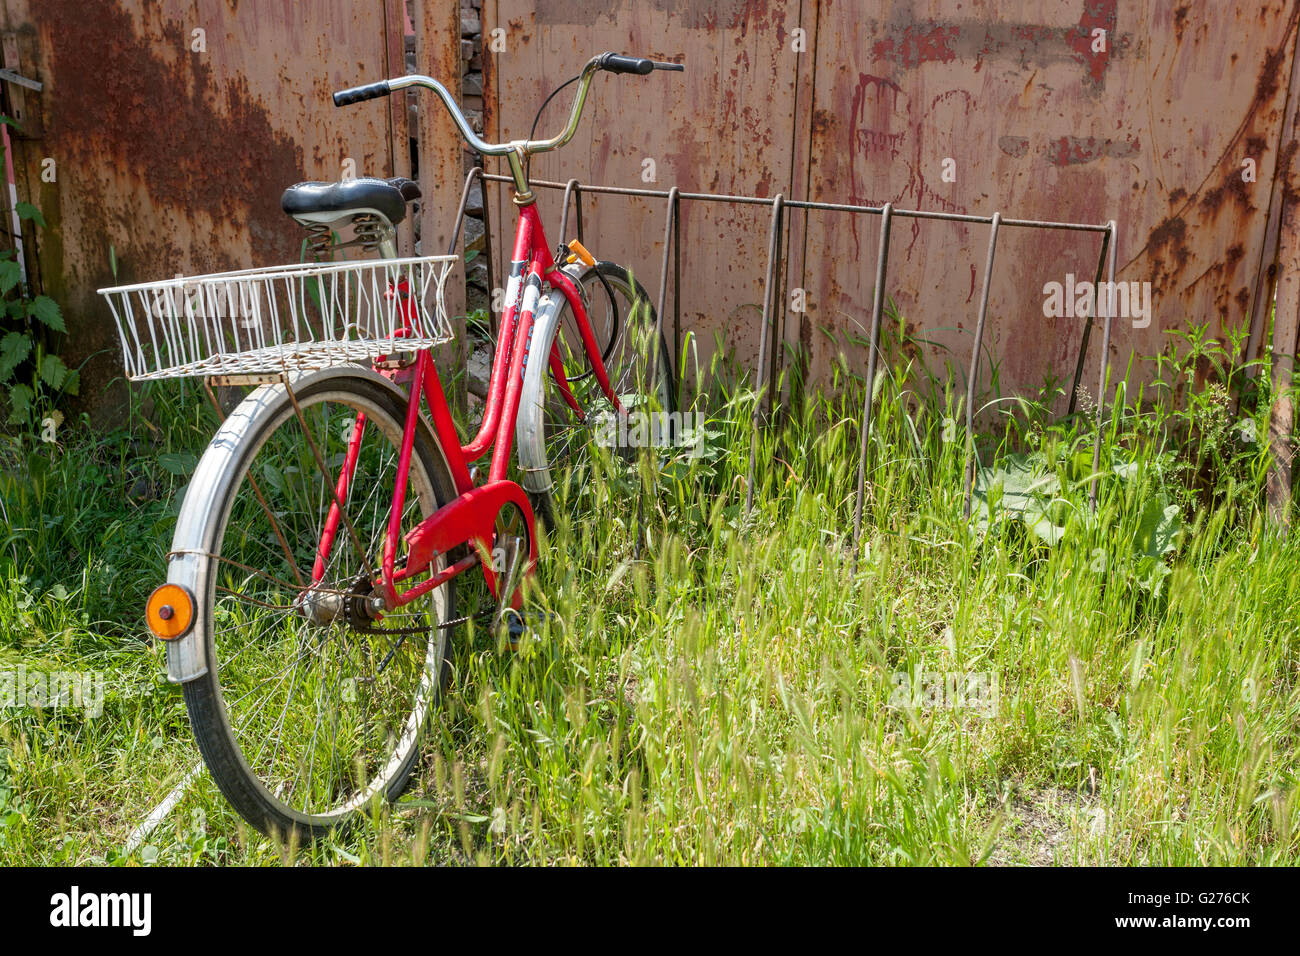 Fahrradständer für Fahrräder, Fahrrad geparkt, Fahrrad mit Korb Stockfoto